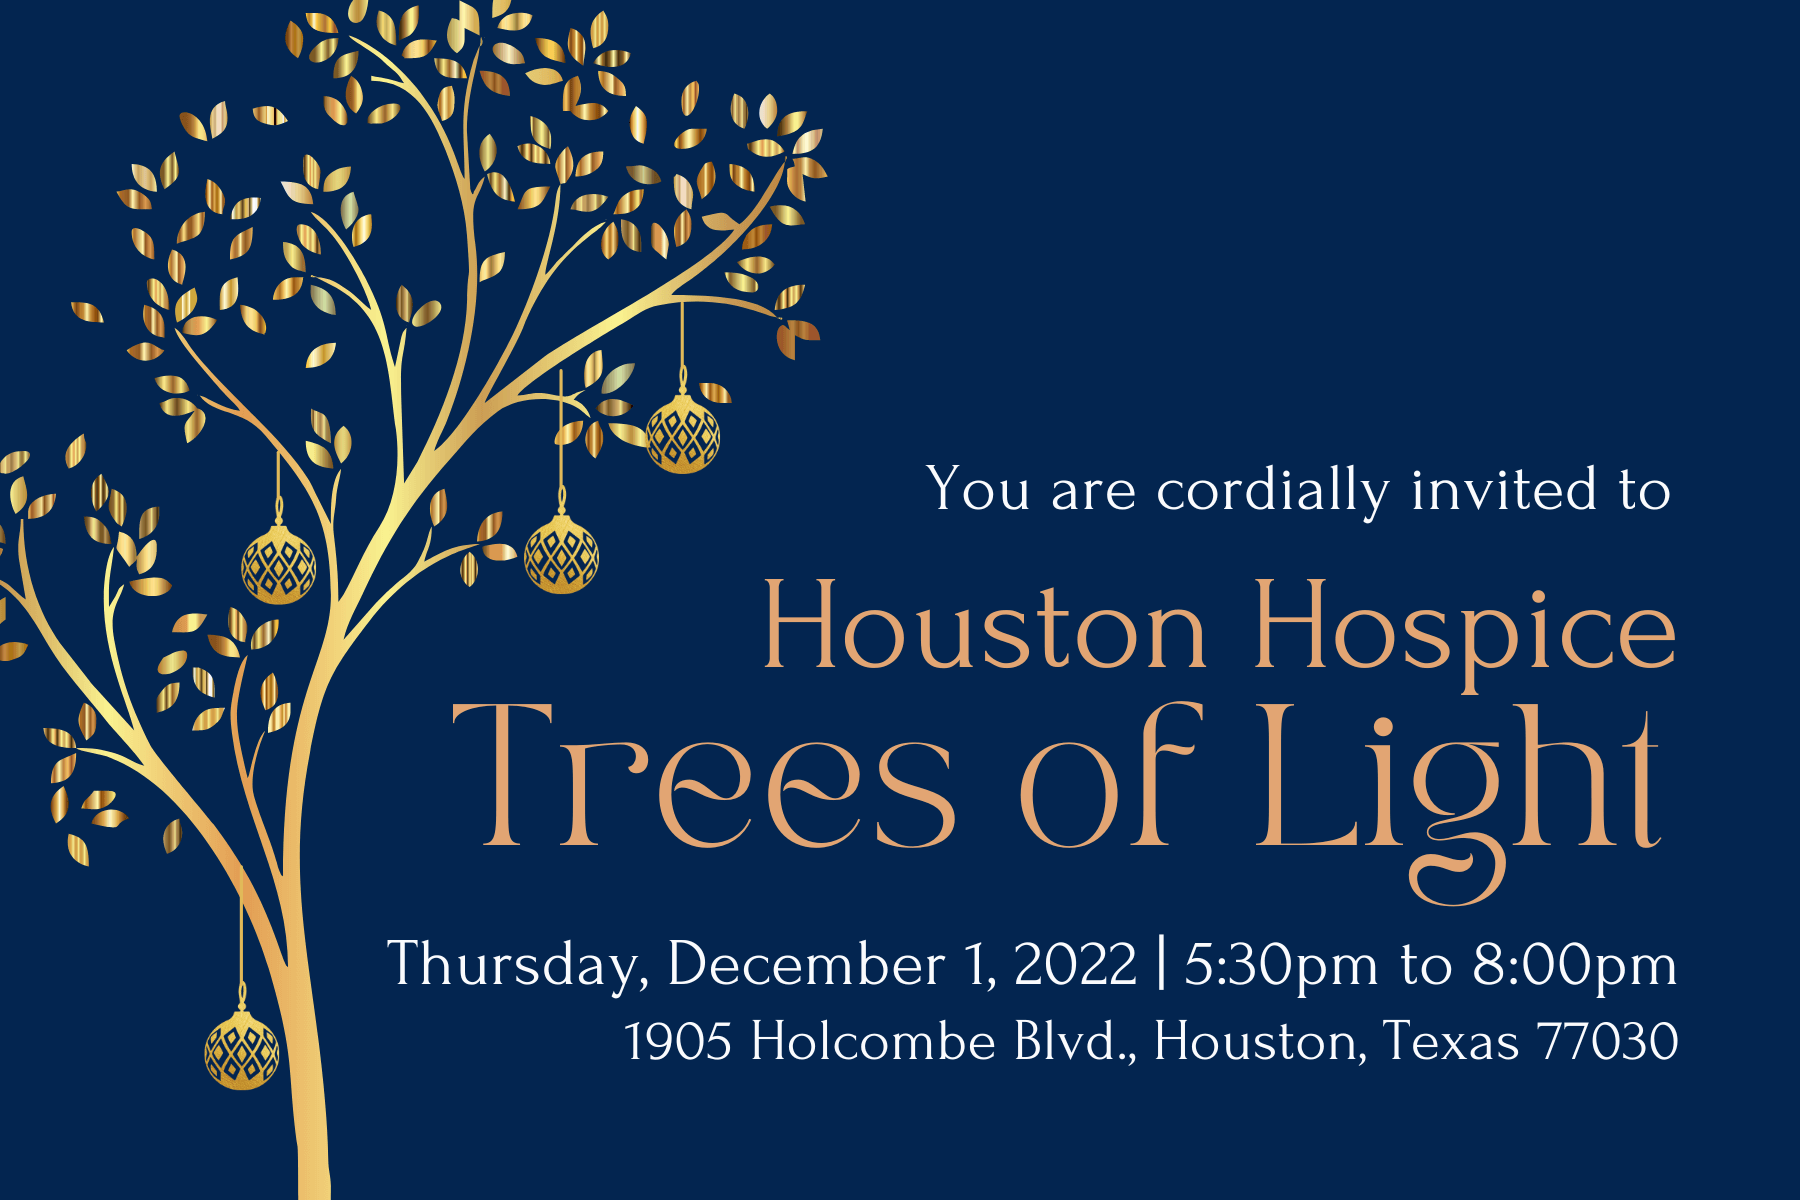 Houston Hospice Trees of Light, Thursday, December 1, 2022